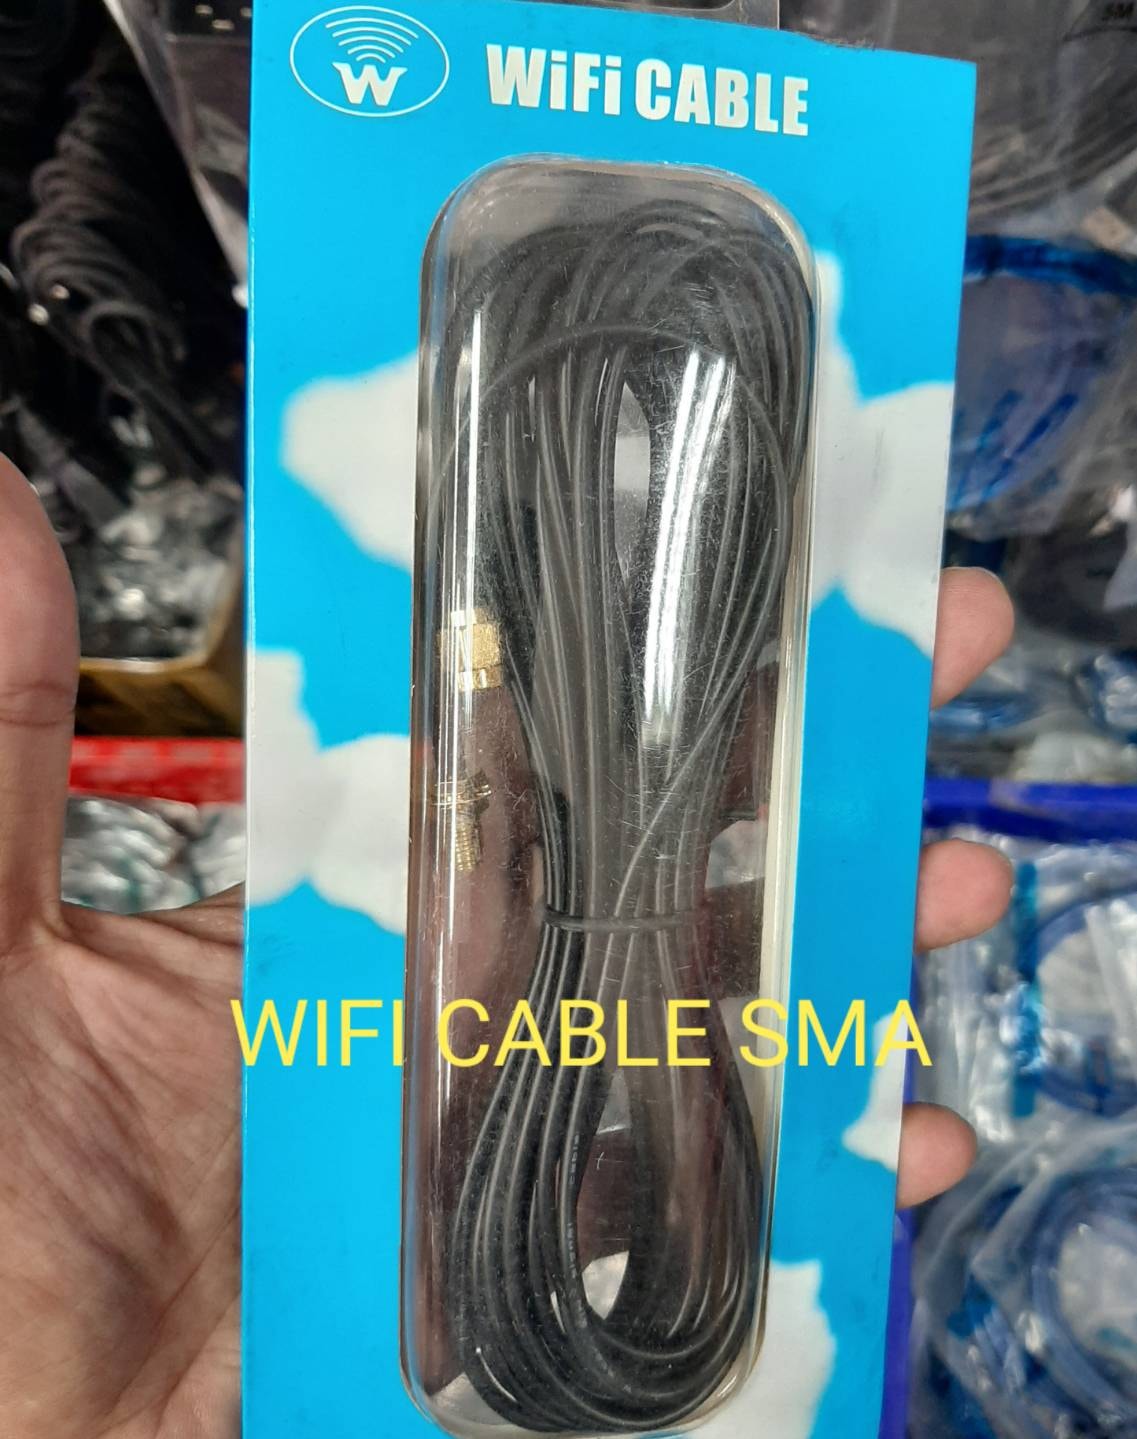 หัว SMA สาย wifi cable หัว SMA 6 เมตร